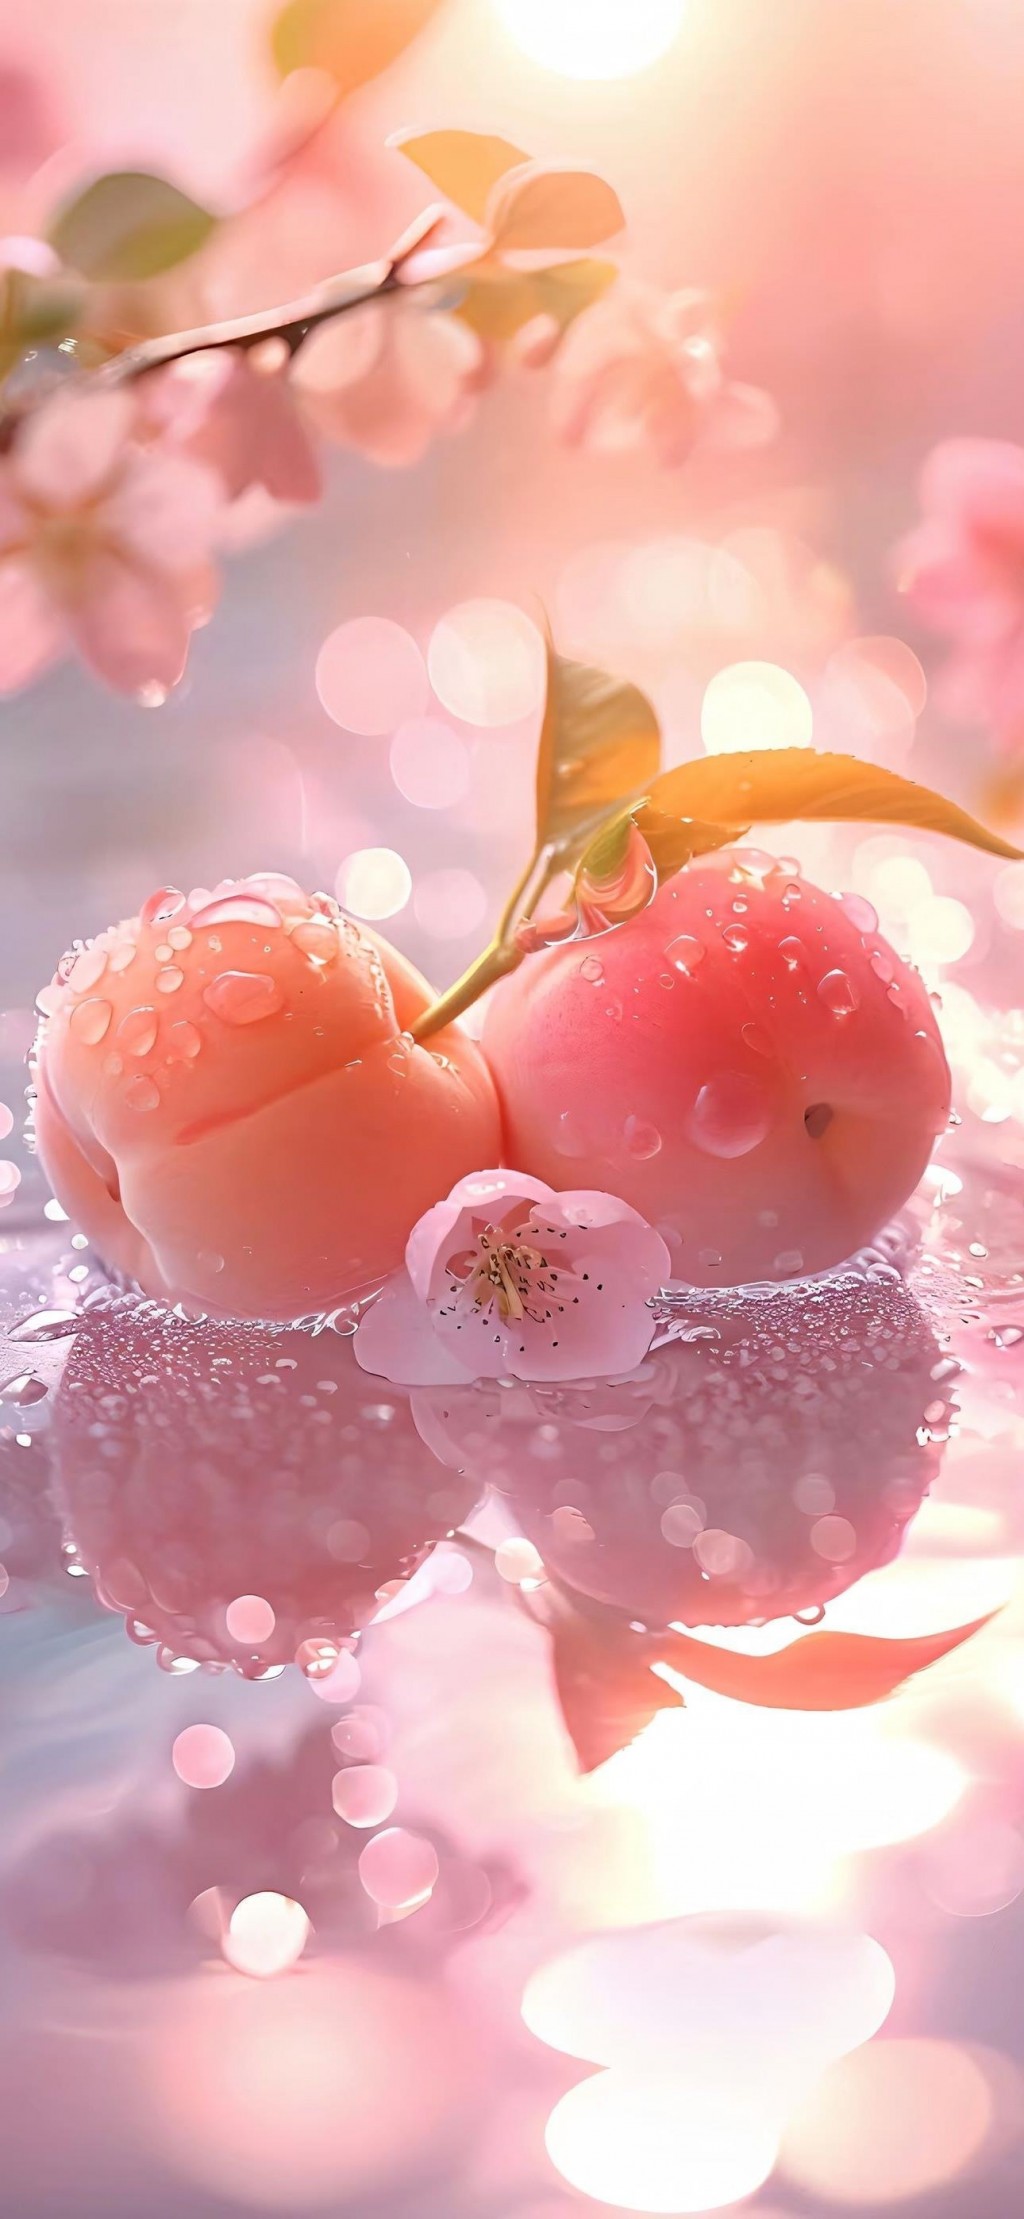 粉色水蜜桃水果摄影大片